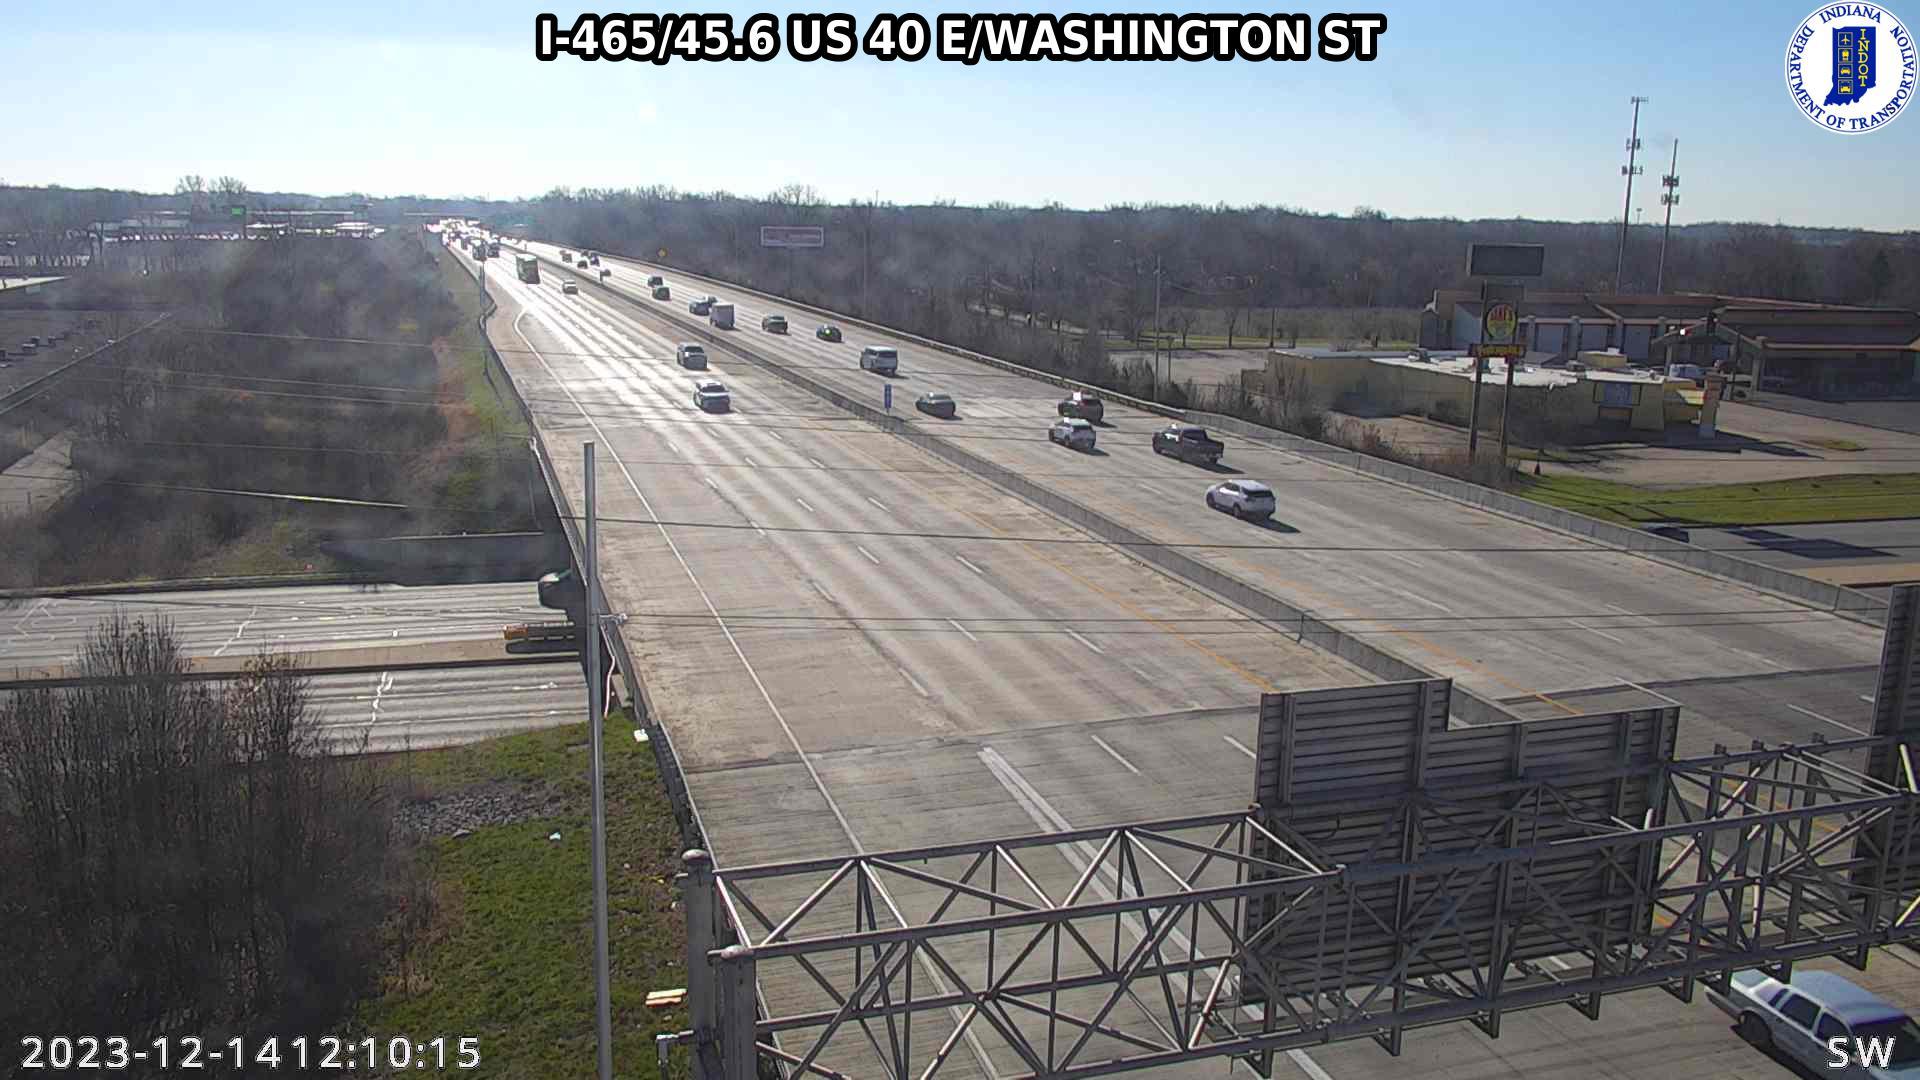 Traffic Cam Indianapolis: I-465: I-465/45.6 US 40 E/WASHINGTON ST Player